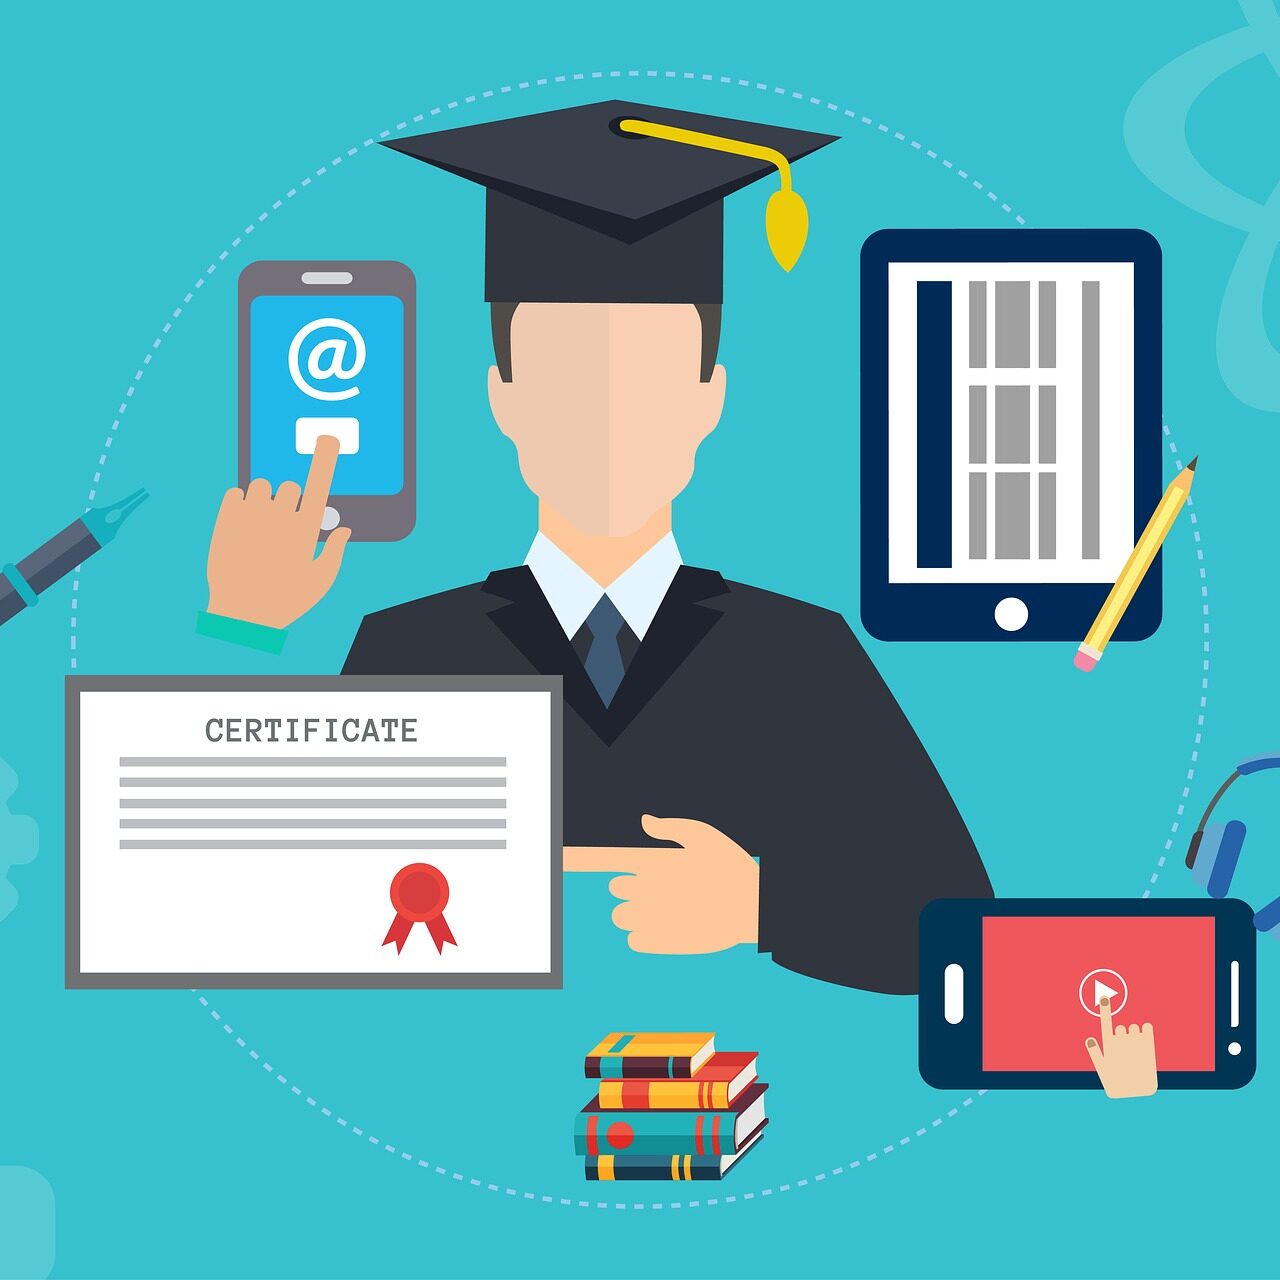 grafika przedstawiająca osobę w stroju absolwenta otoczoną certyfikatem, książkami i tabletami